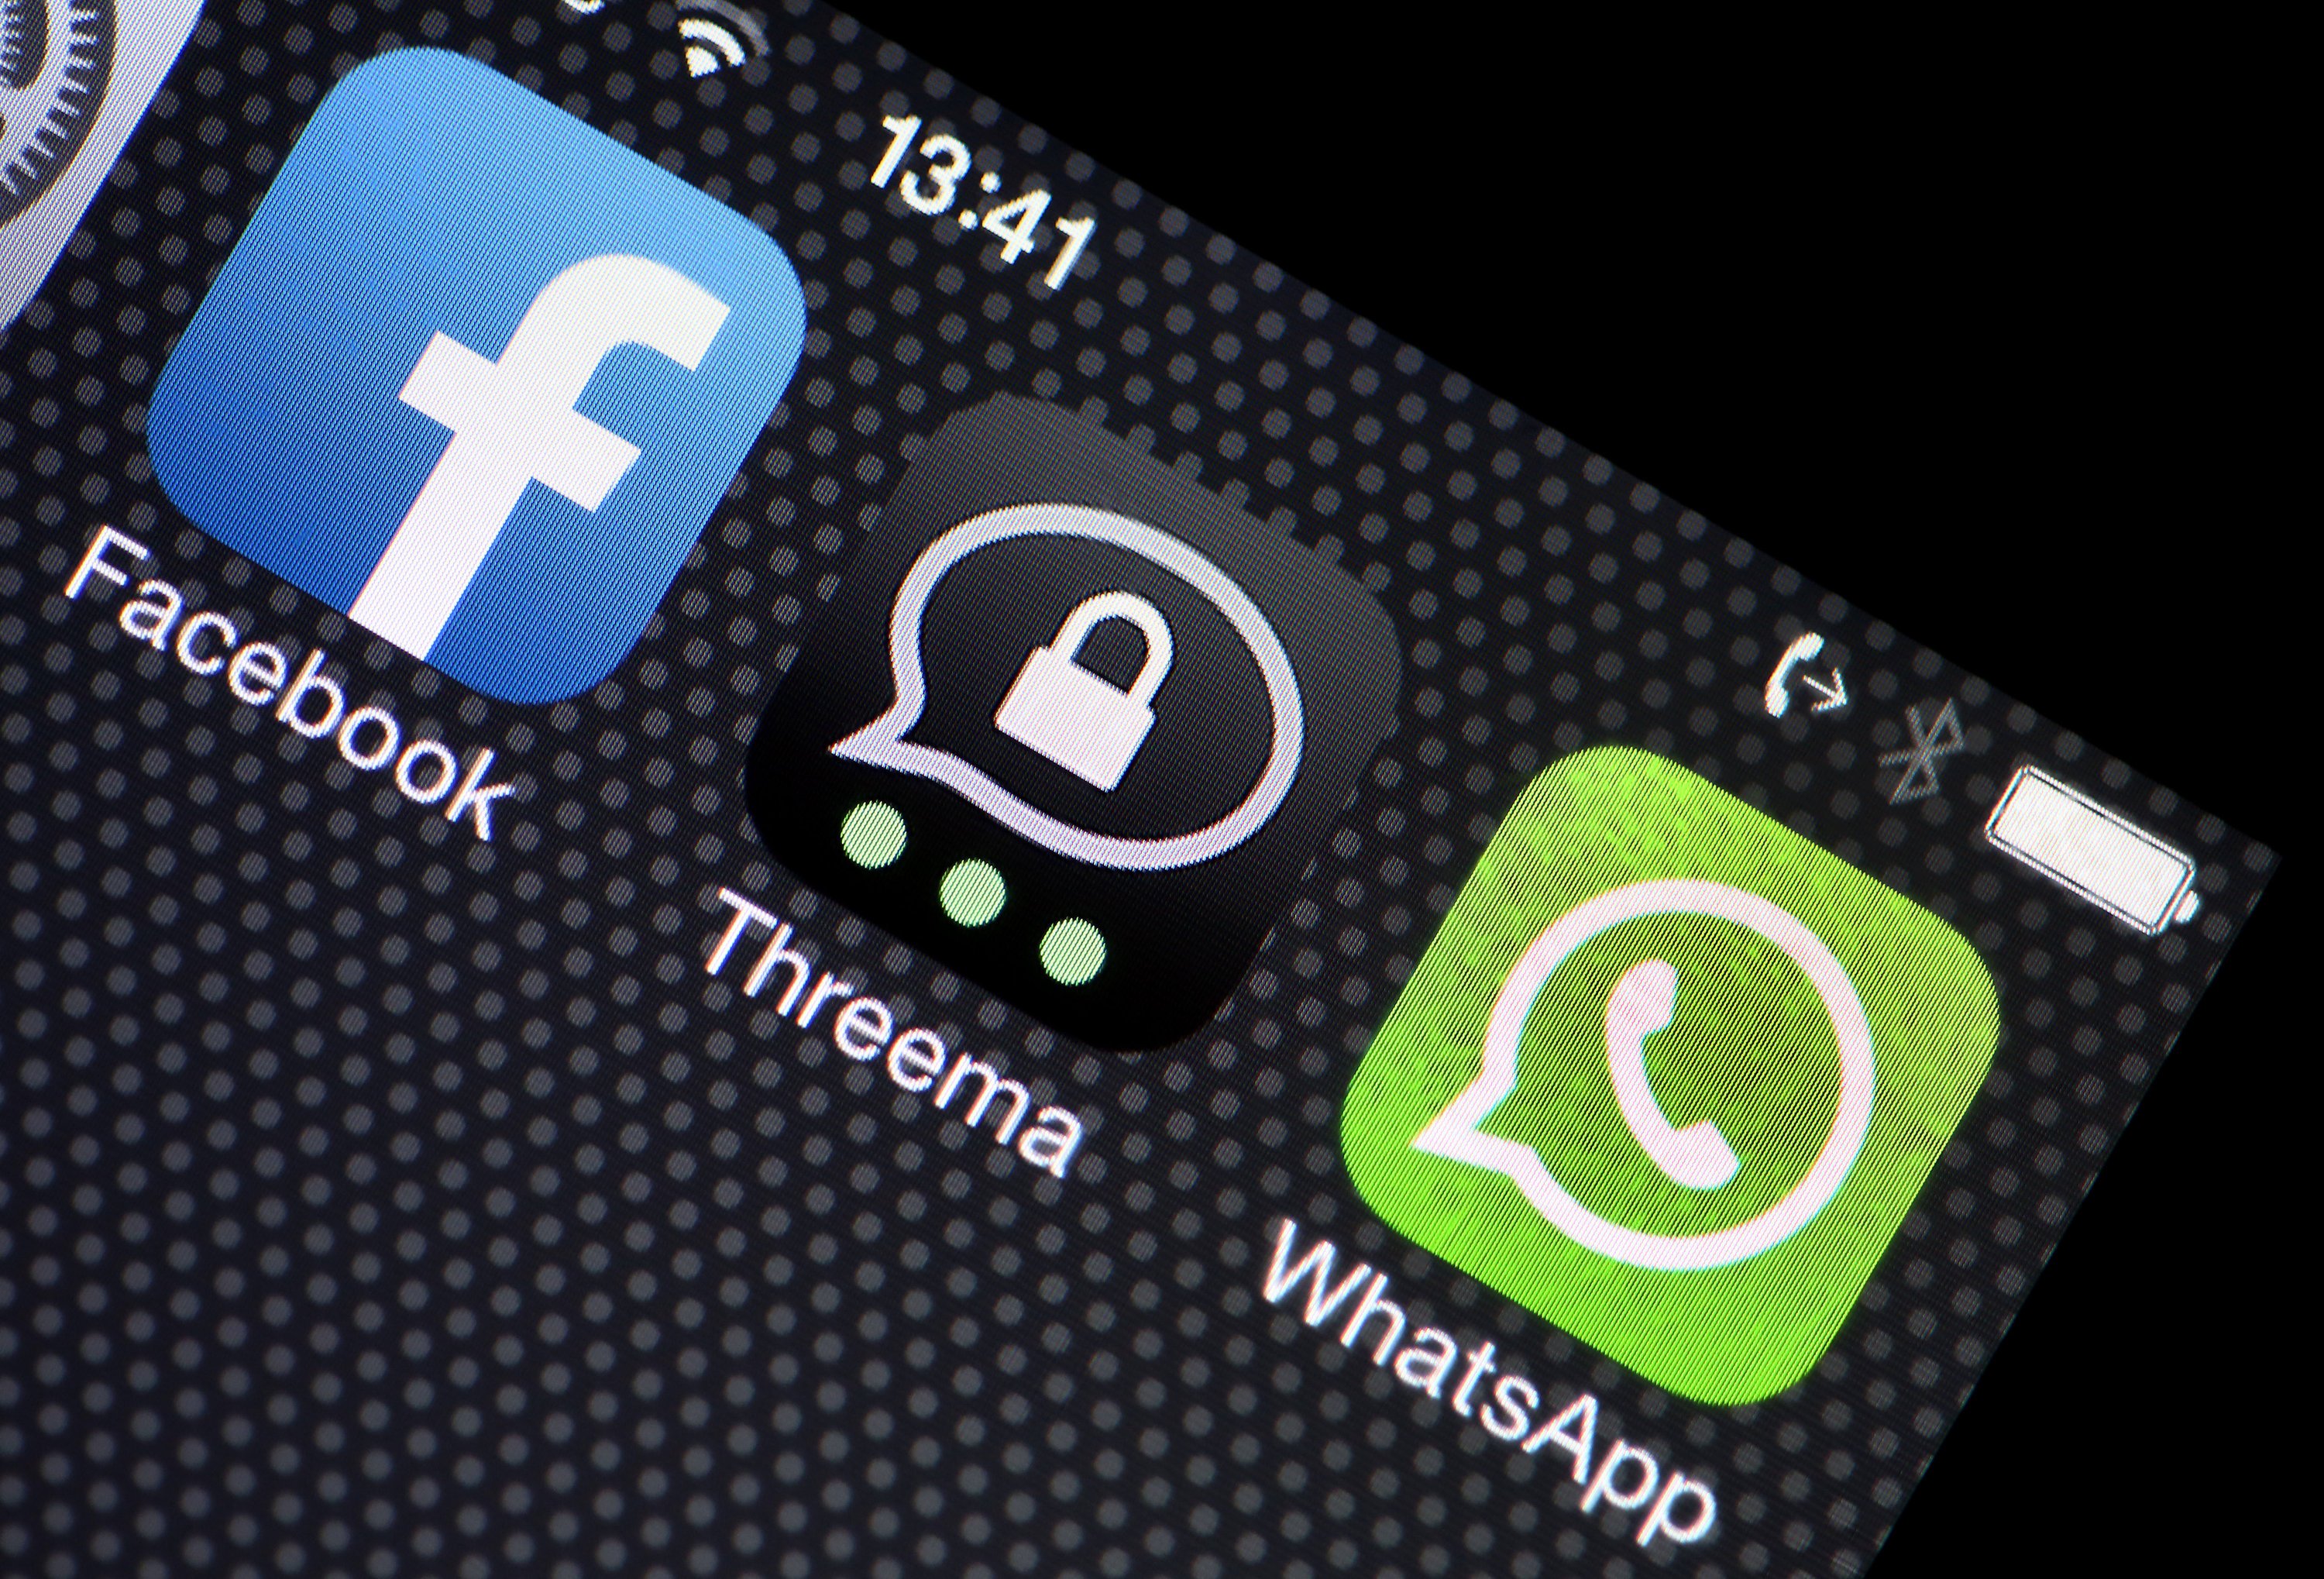 Stiftung Warentest nahm Messenger unter die Lupe: Während WhatsApp und Facebook schlecht abschnitten, konnte die Schweizer App Threema mit gutem Datenschutz punkten. 